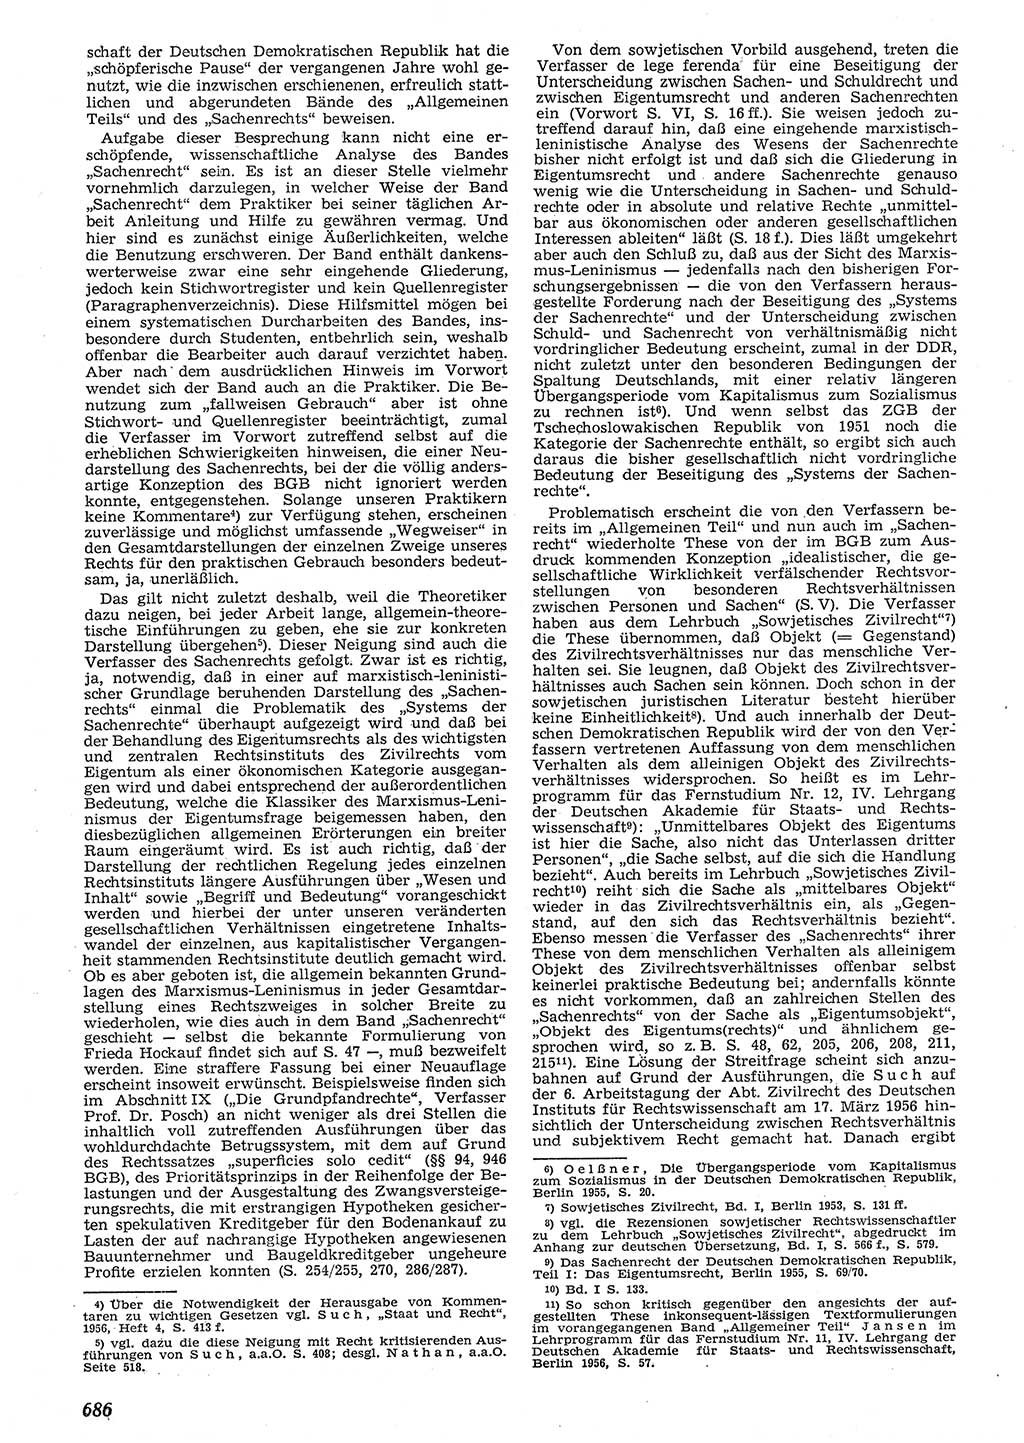 Neue Justiz (NJ), Zeitschrift für Recht und Rechtswissenschaft [Deutsche Demokratische Republik (DDR)], 10. Jahrgang 1956, Seite 686 (NJ DDR 1956, S. 686)